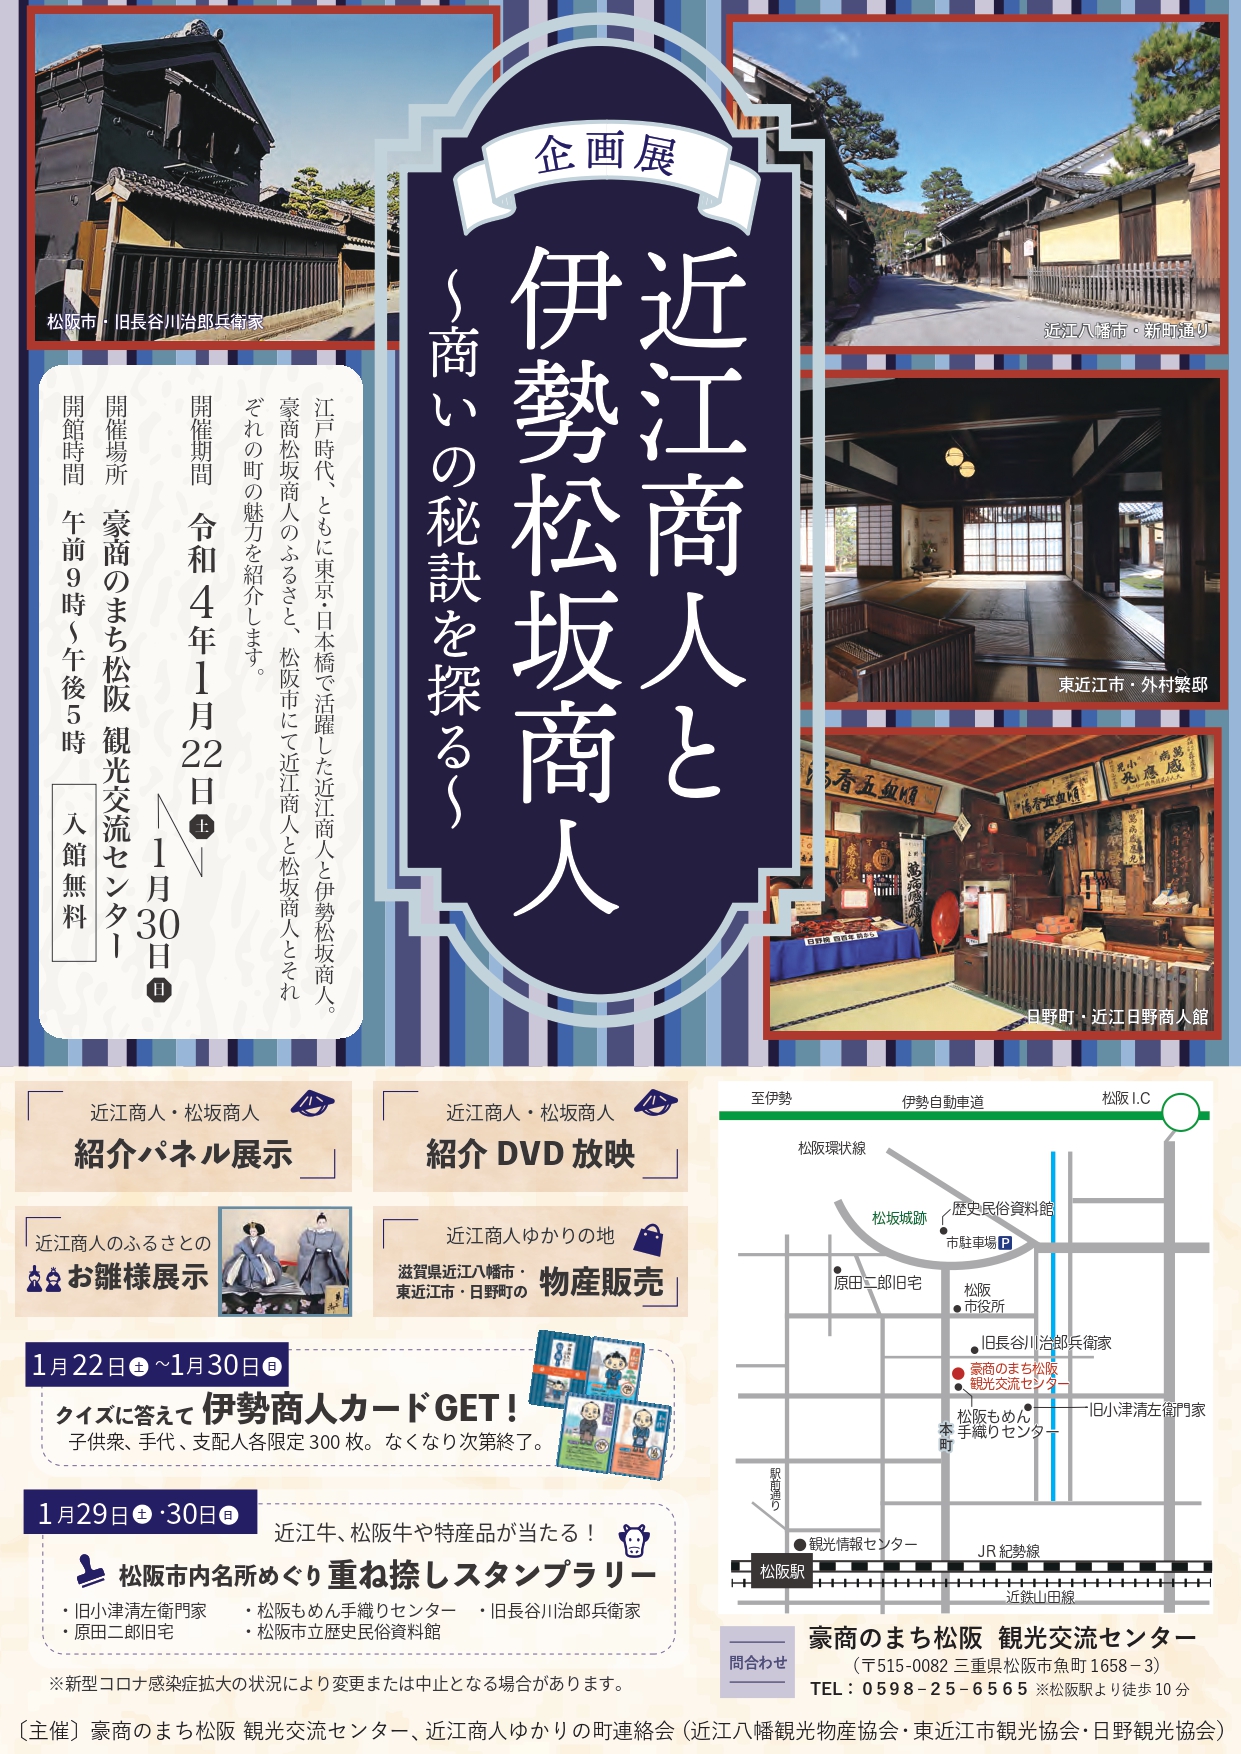 企画展1/22~30「近江商人と伊勢松坂商人」が開催されます。